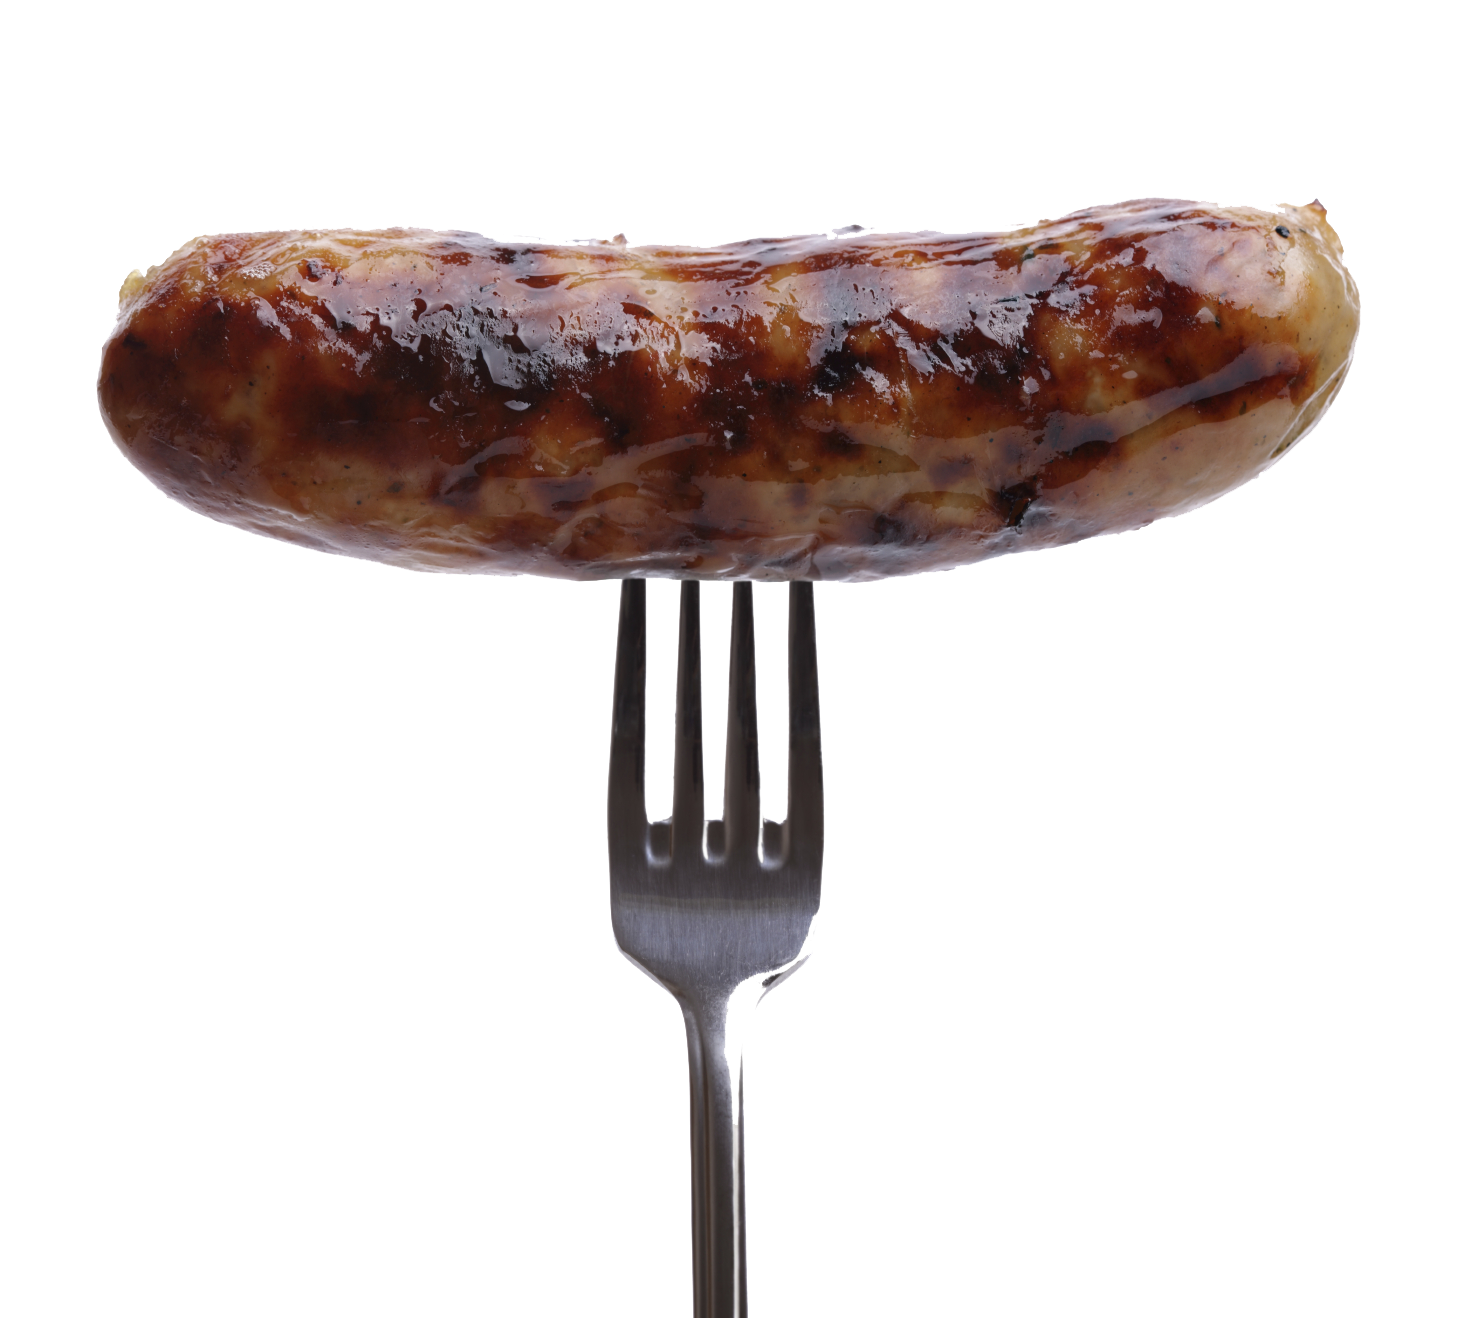 Sausage On Fork Transparent Images